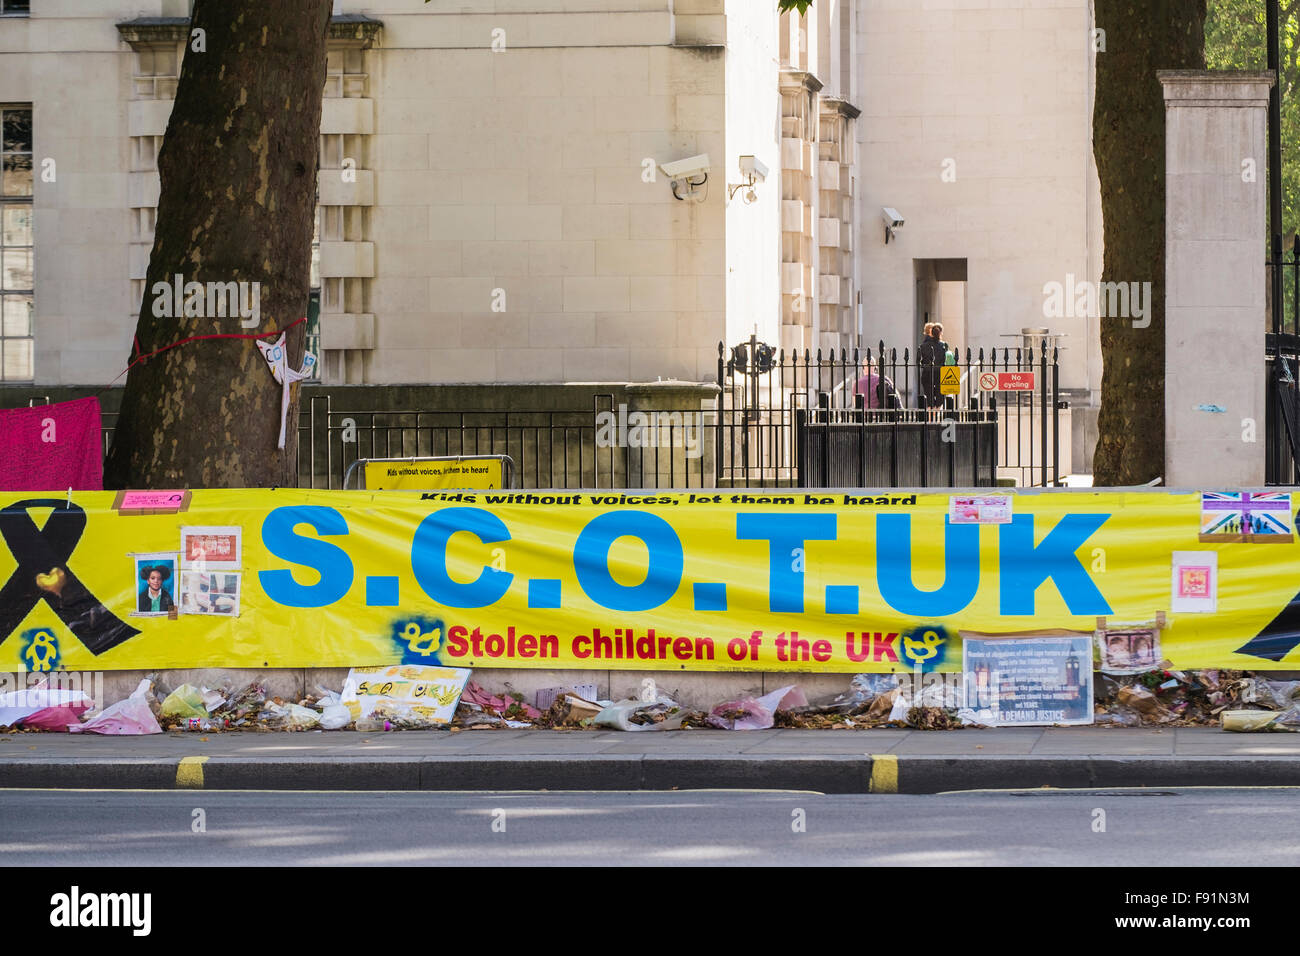 Les enfants volés de la bannière du Royaume-Uni, Londres, Angleterre, Royaume-Uni Banque D'Images